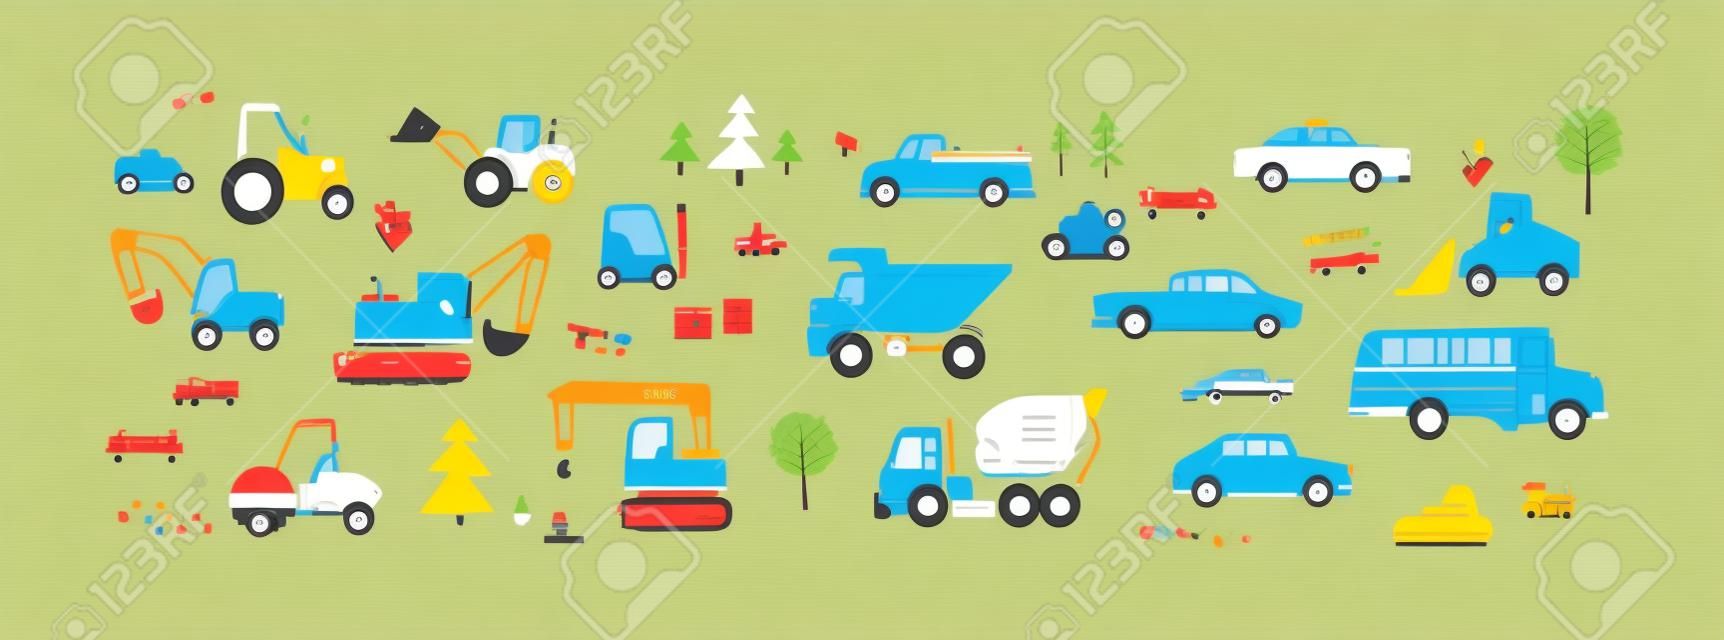 스칸디나비아 스타일의 귀여운 자동차. 유치한 도로 운송 장난감 세트. 트랙터, 버스, 덤프 트럭, 굴삭기, 지게차, 택시 및 픽업 자동차. 흰색 배경에 고립 된 컬러 평면 벡터 일러스트